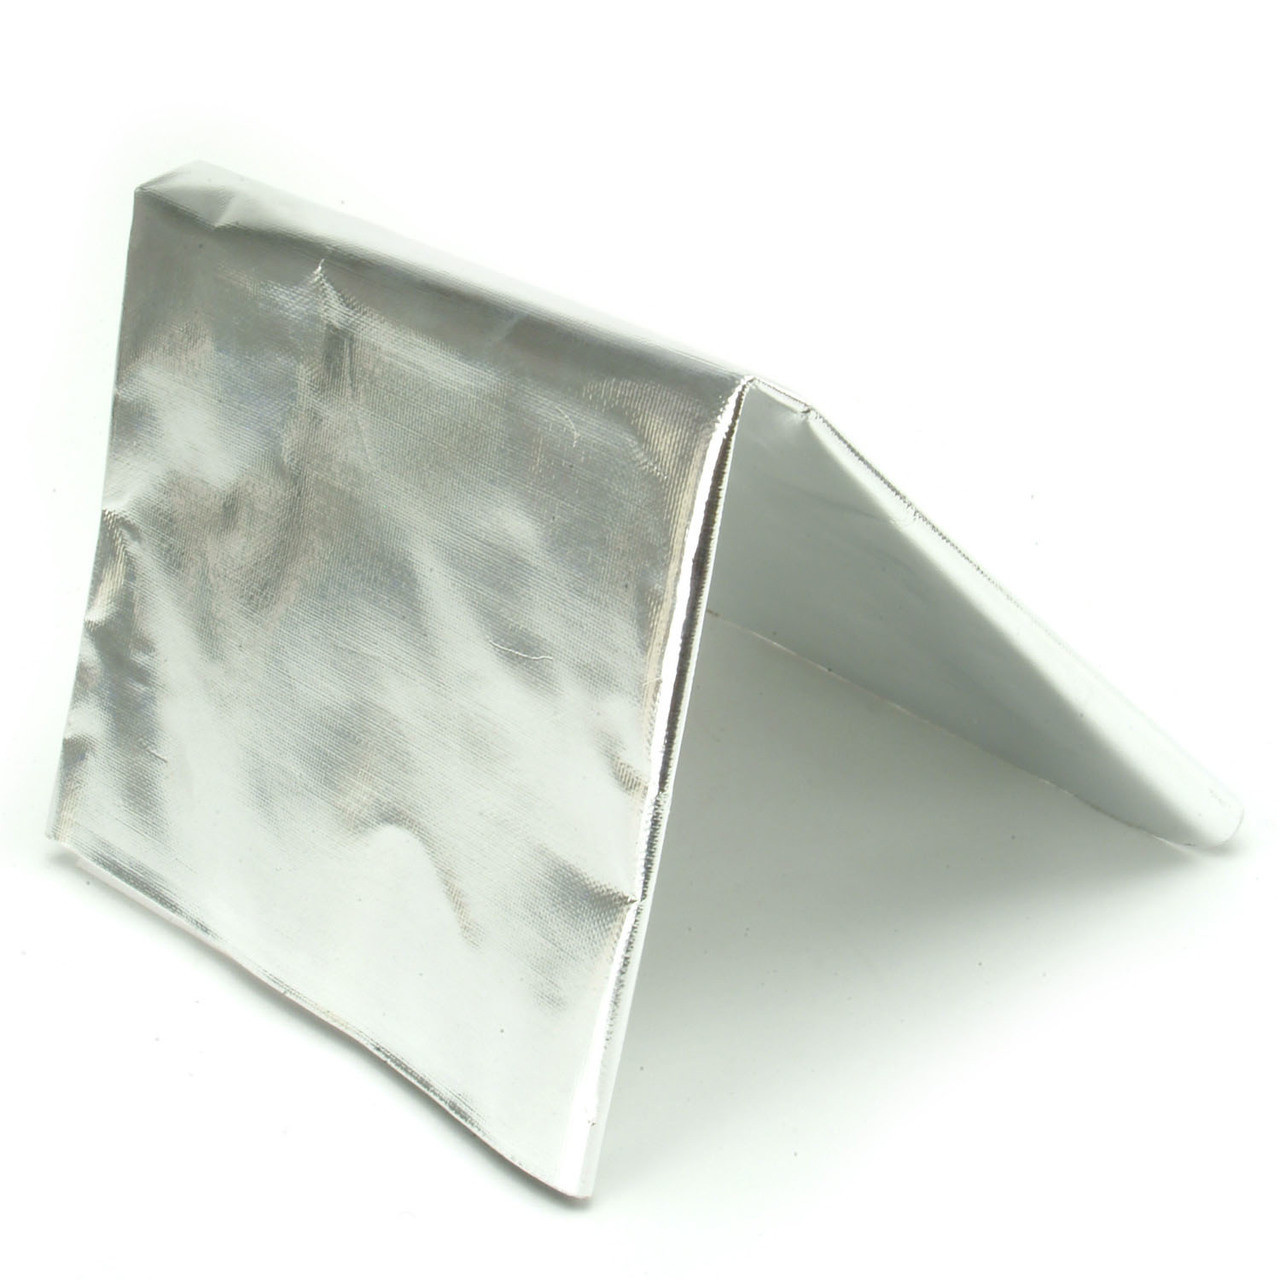 10m Kühler reflektierende Film wand Wärmedämmung reflektierende Folie  Aluminium folie Wärme dämm folien Dach isolation folie